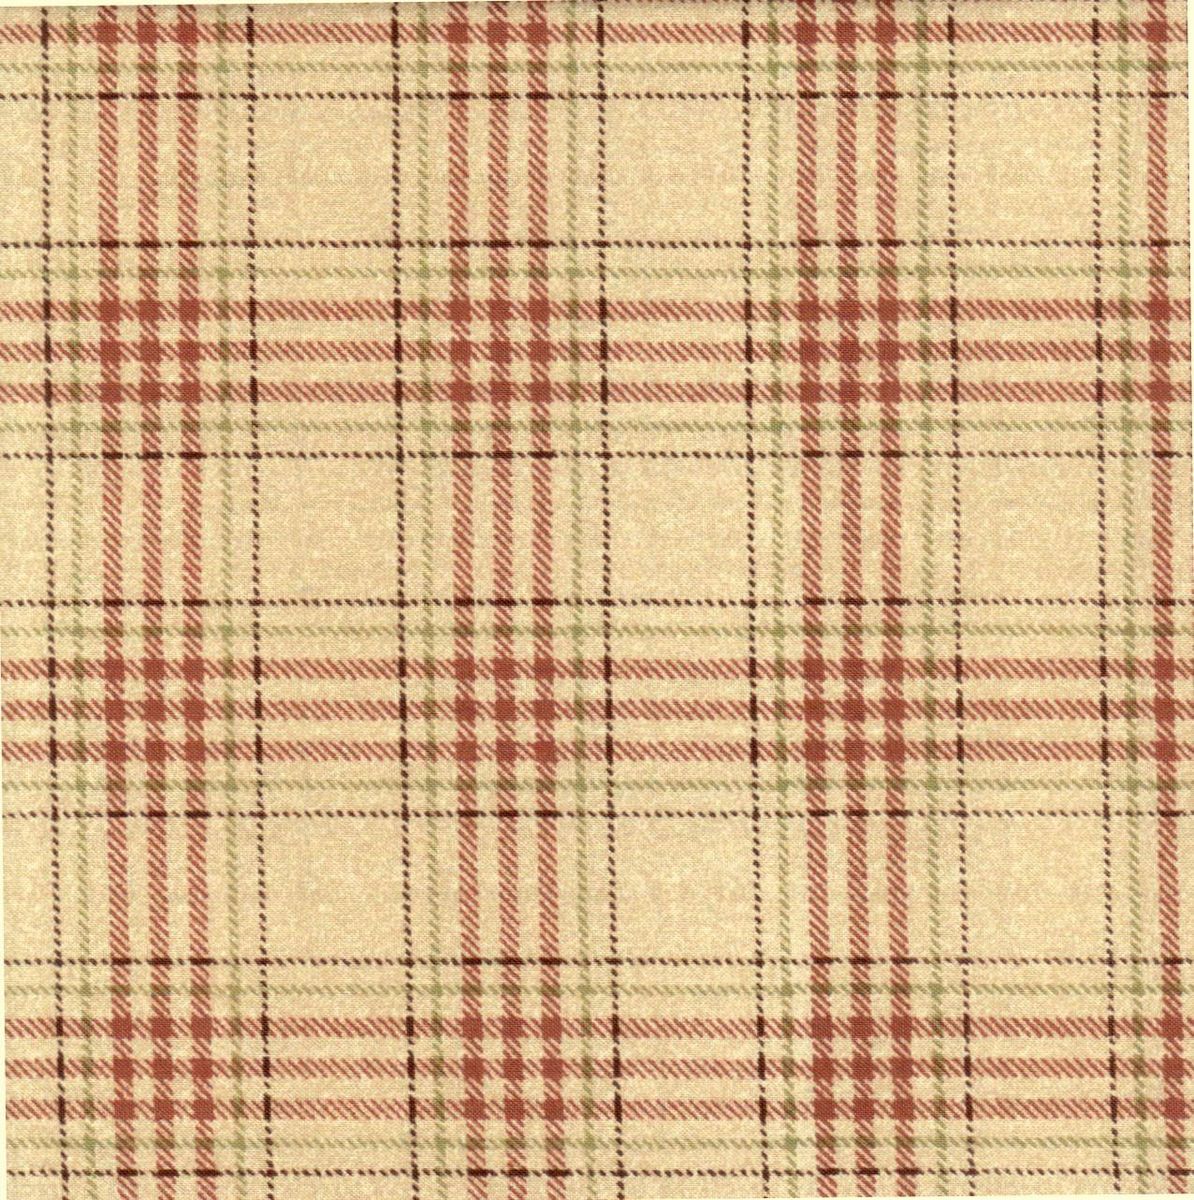 Maple Leaf Hill Maywood Quilt Fabric Plaid Ecru 1 2 Yd